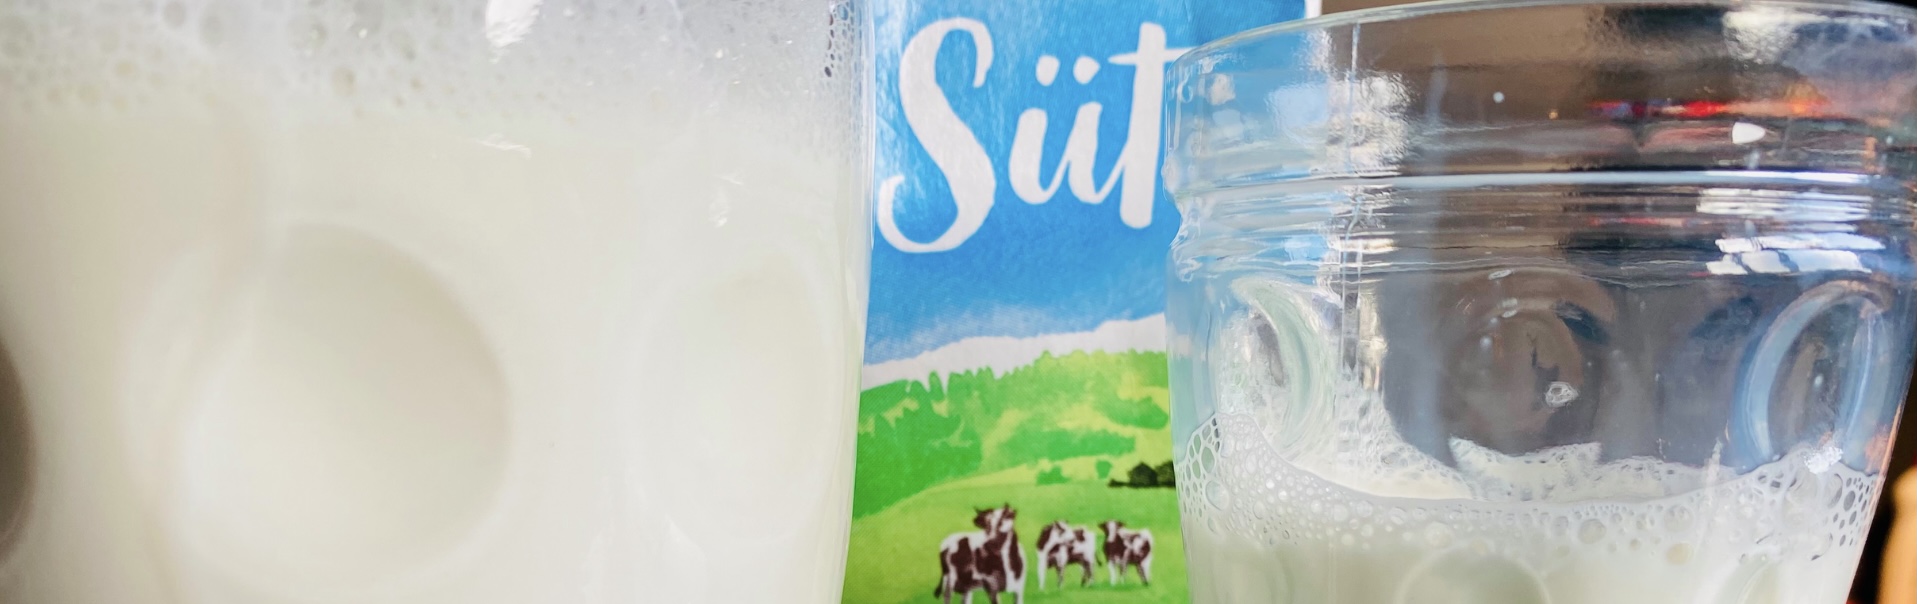 Laktik asit bir diğer adıyla süt asiti için kullanlan bir görsel.